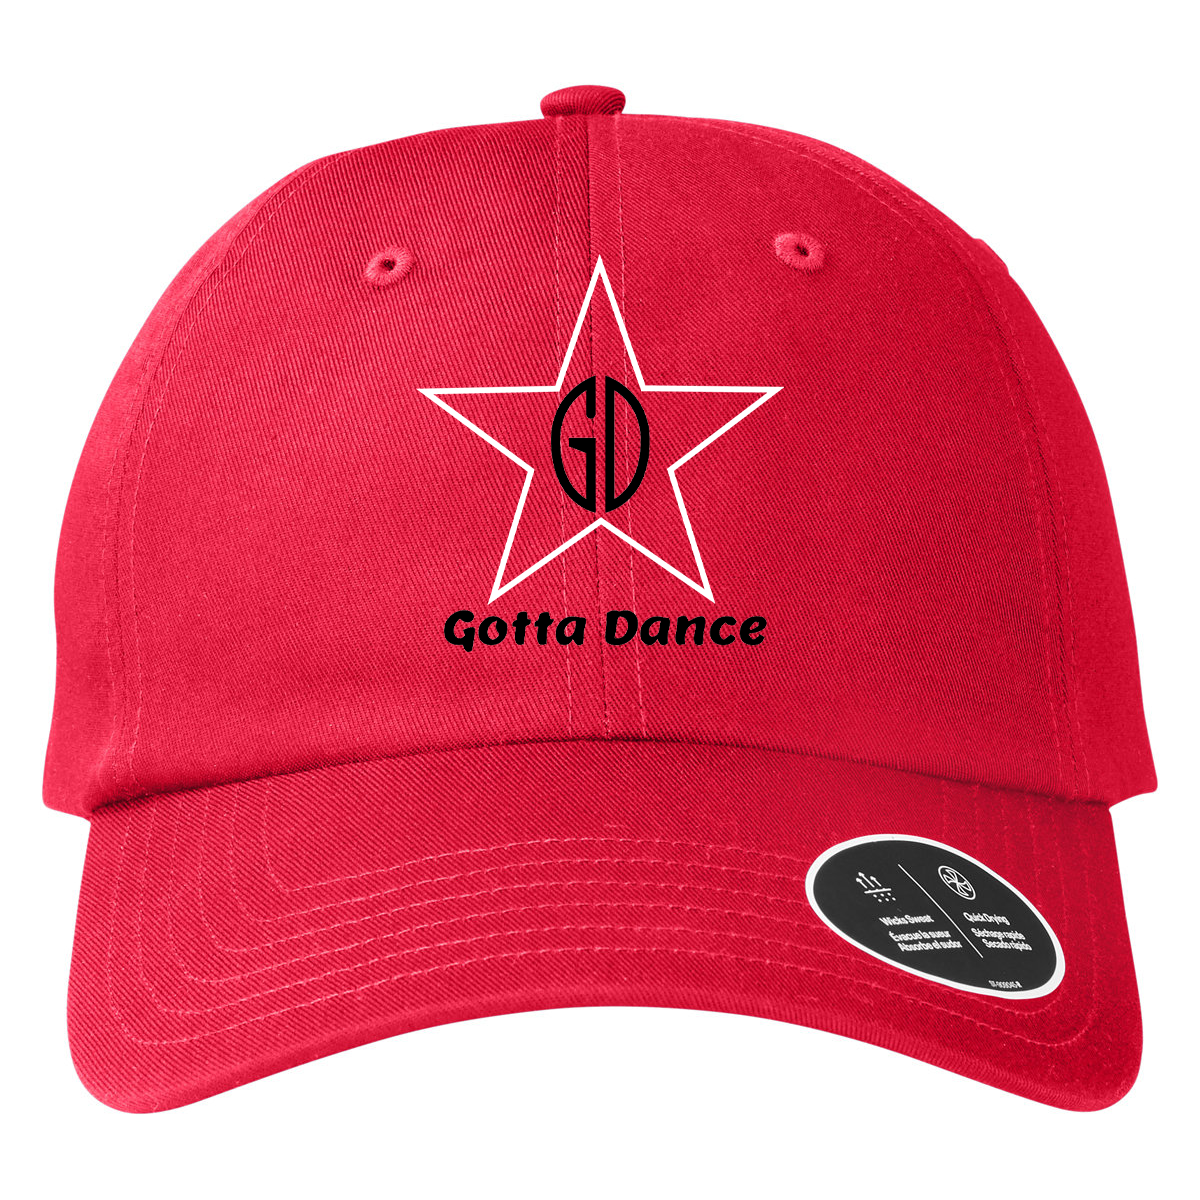 Gotta Dance Under Armour Team Chino Hat